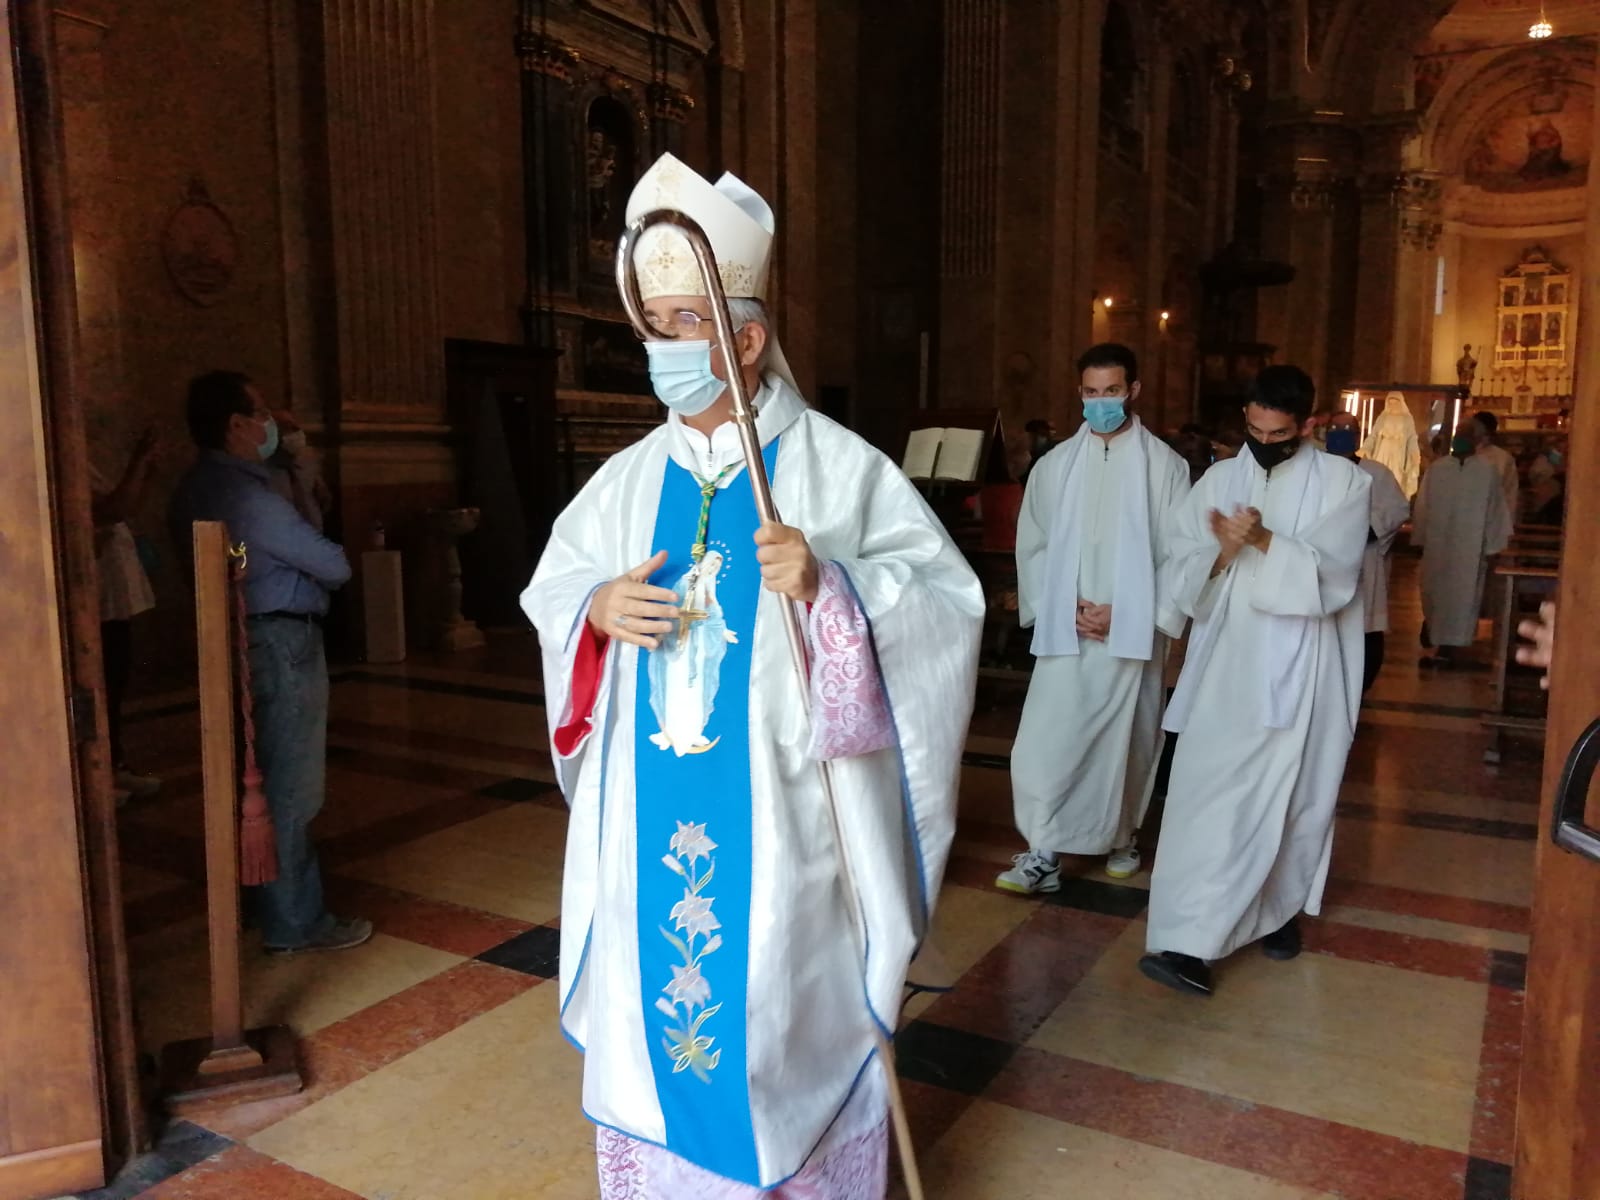 Il vescovo di Cremona monsignor Antonio Napolioni a Cassano d'Adda in Santa Maria e San Zeno